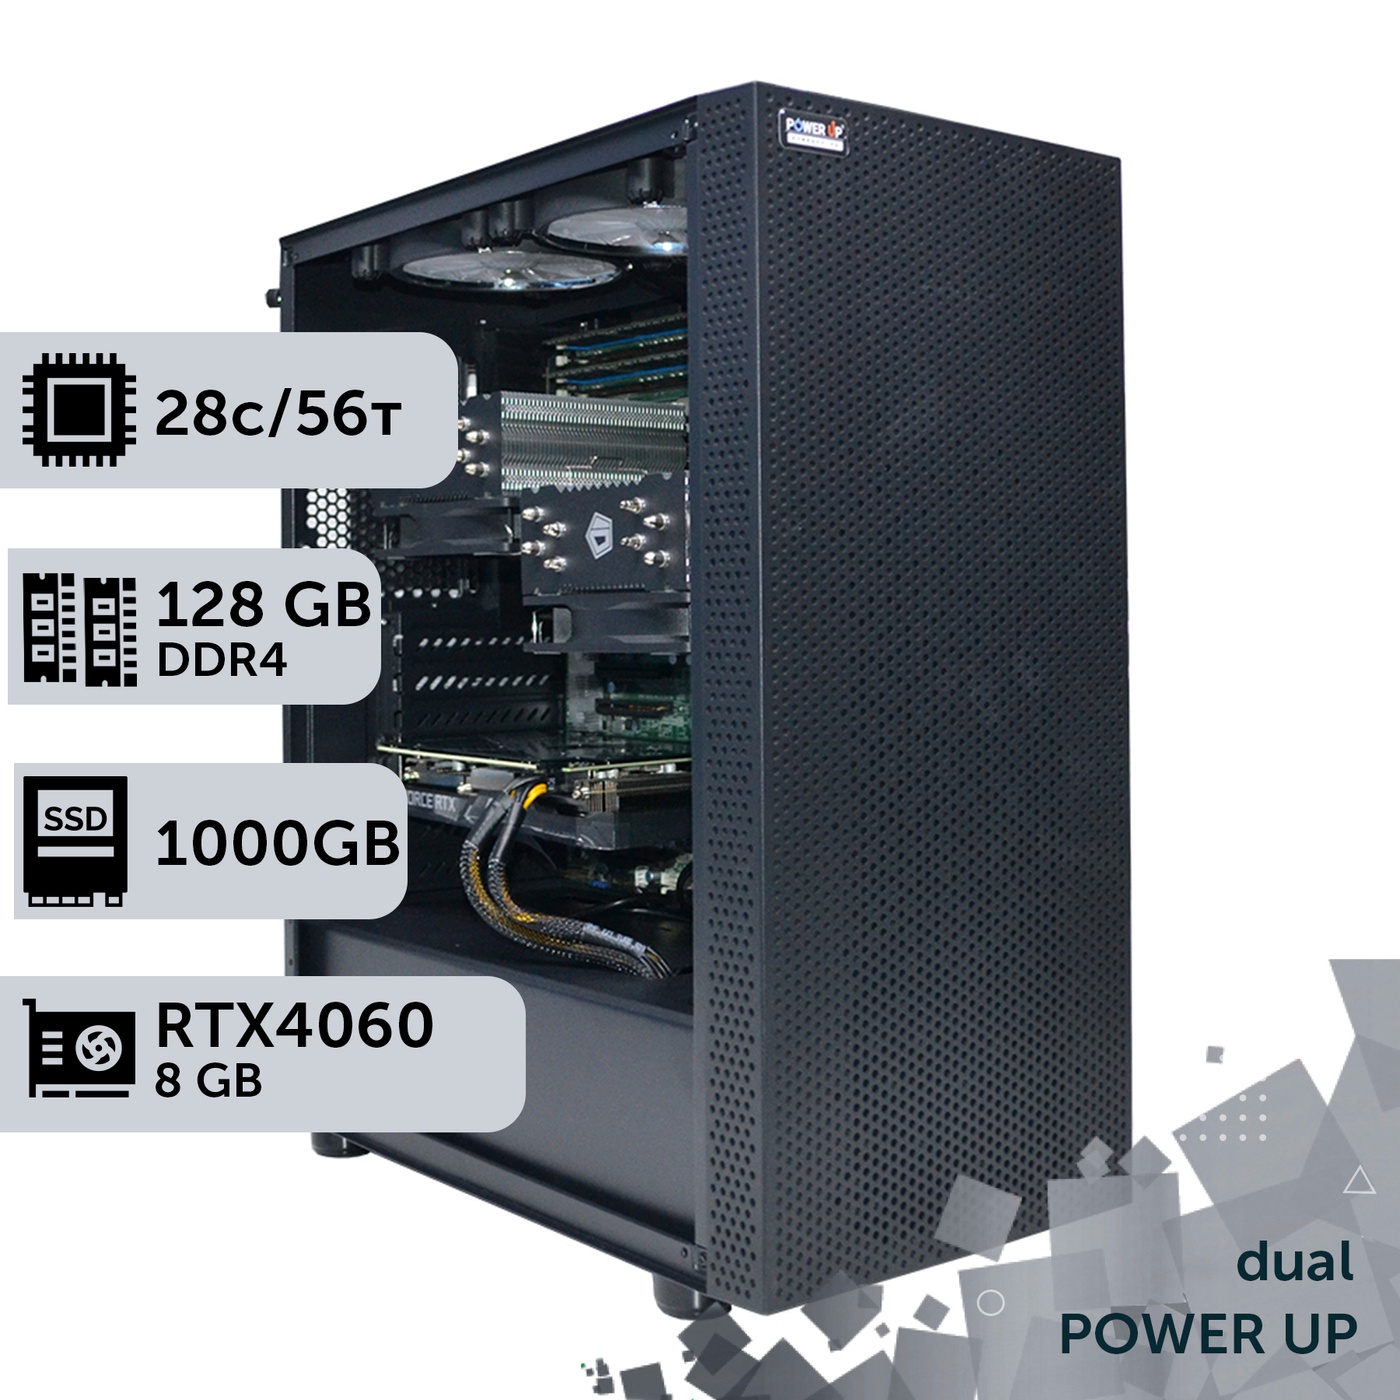 Двухпроцессорная рабочая станция PowerUp #362 Xeon E5 2680 v4 x2/128 GB/SSD 1TB/GeForce RTX 4060 8GB